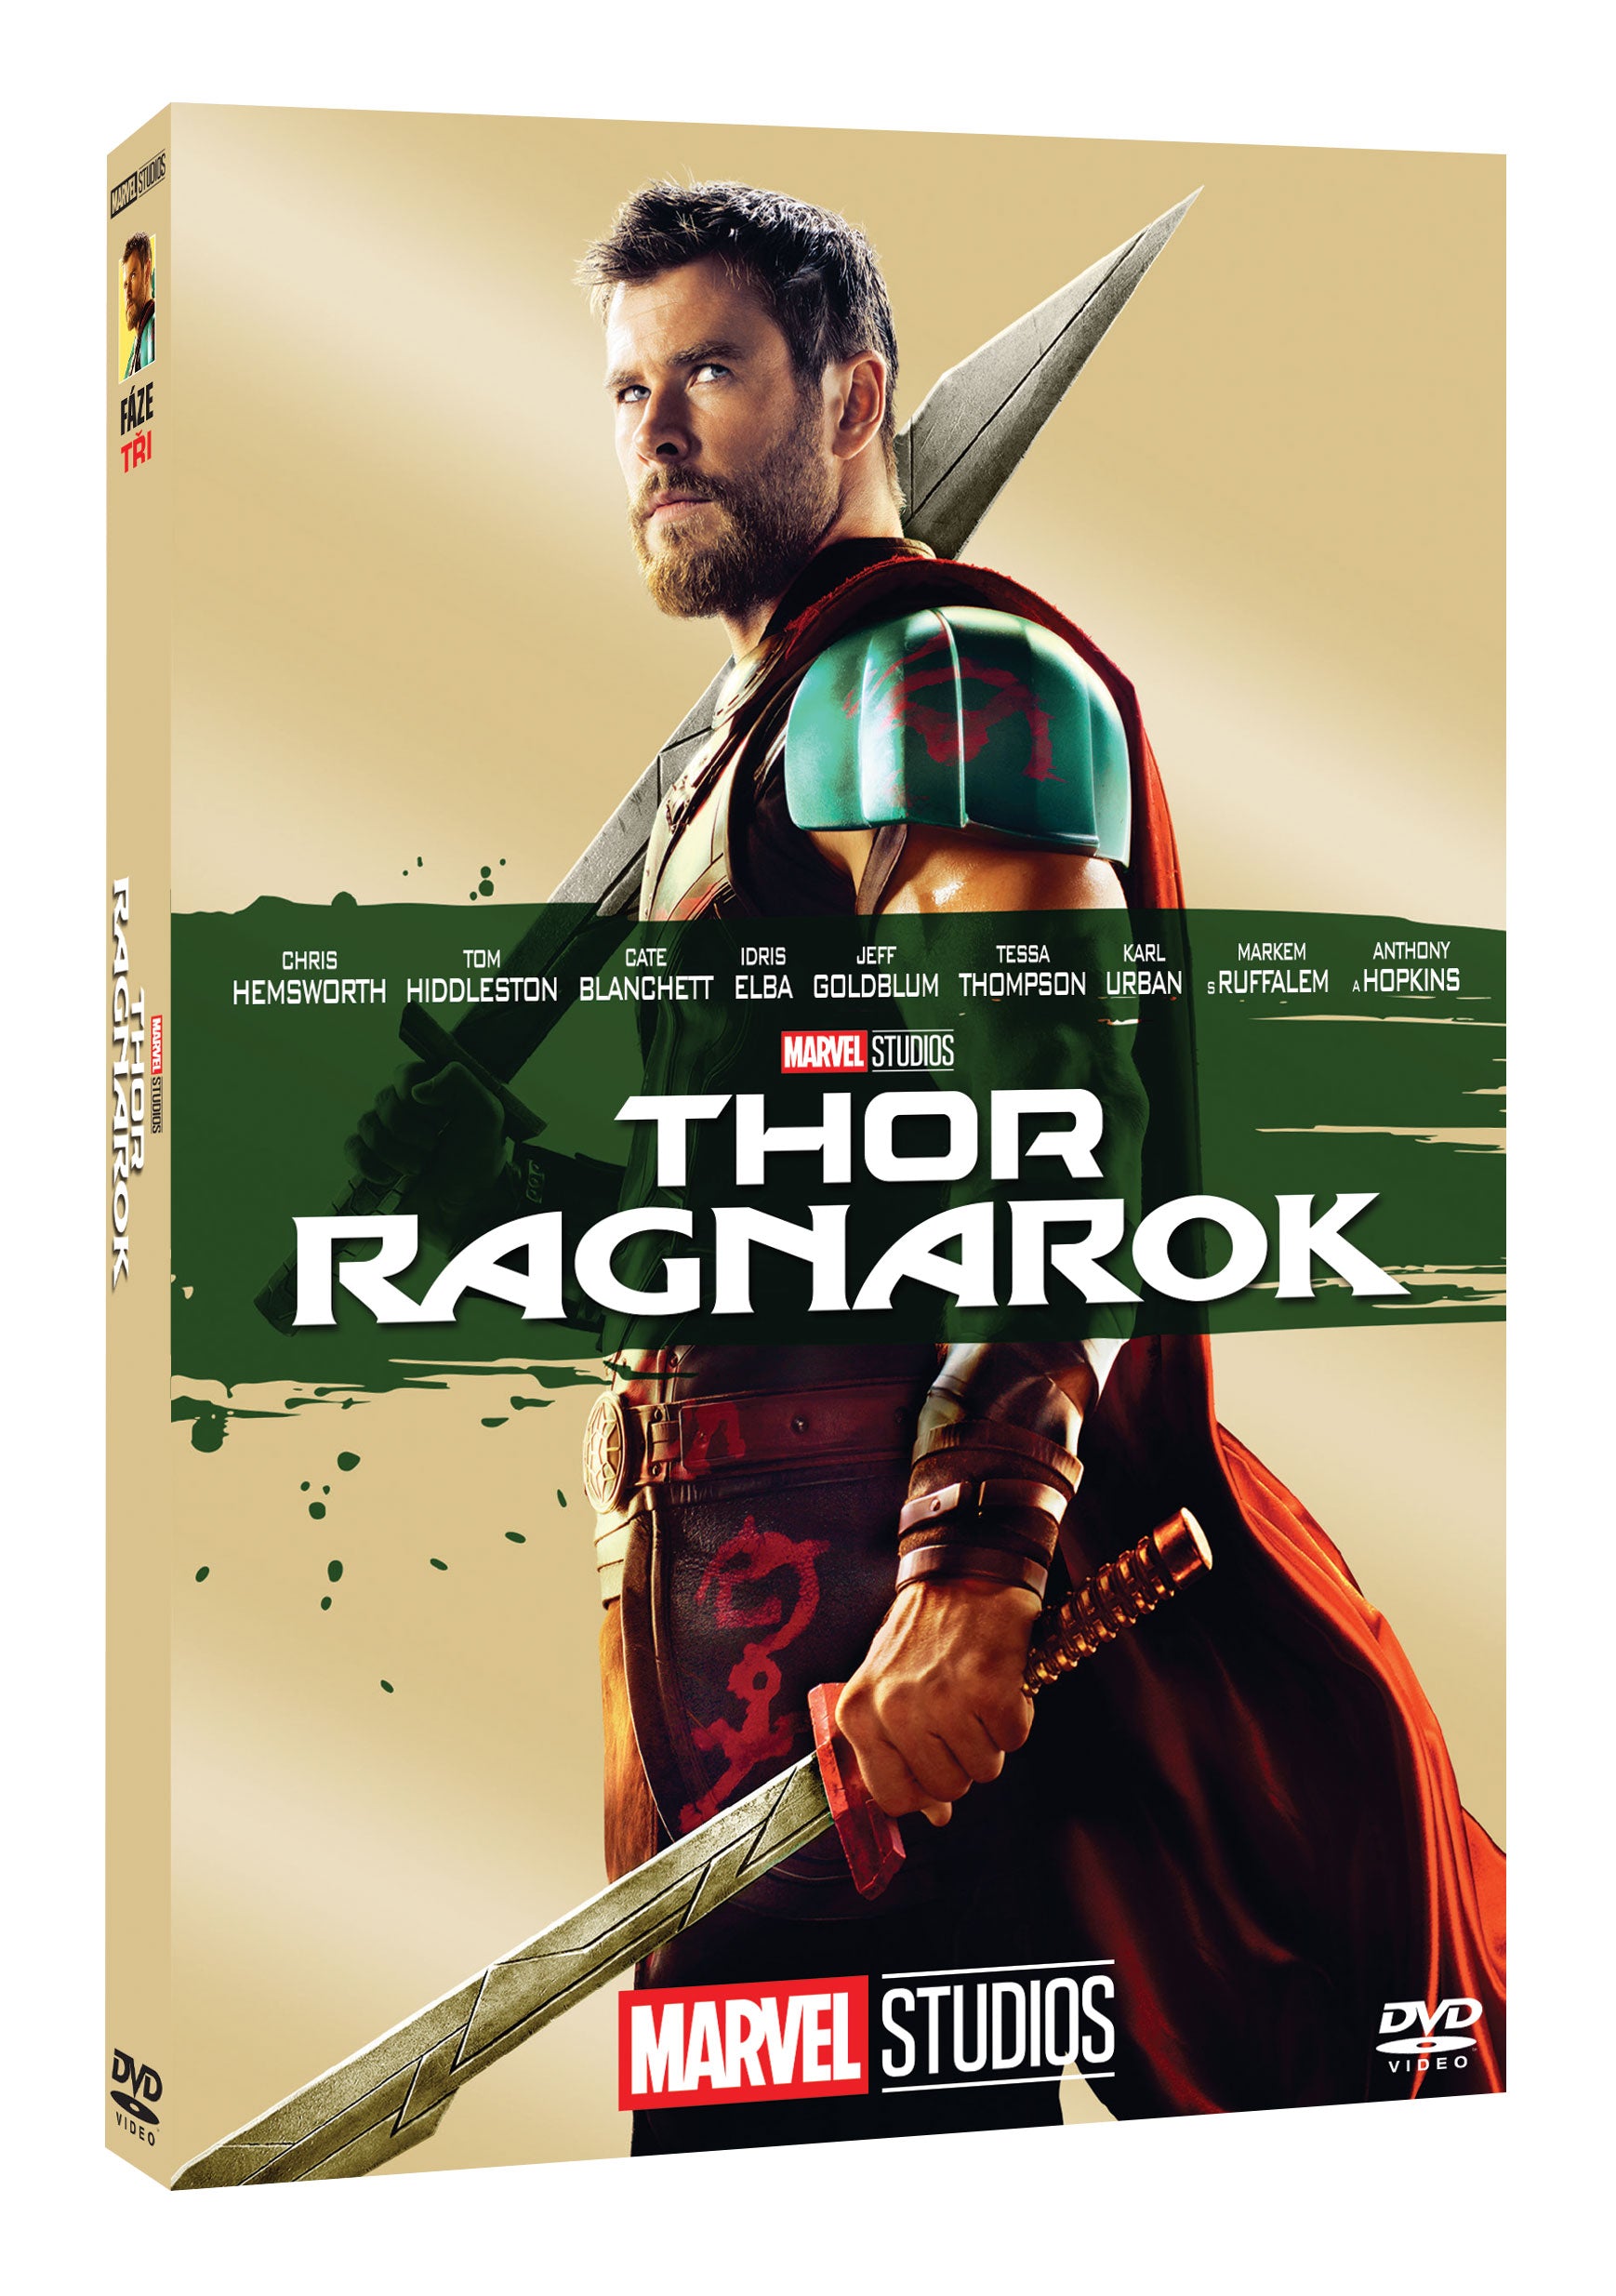 Thor: Ragnarok DVD - Edice Marvel 10 let / Thor: Ragnarok